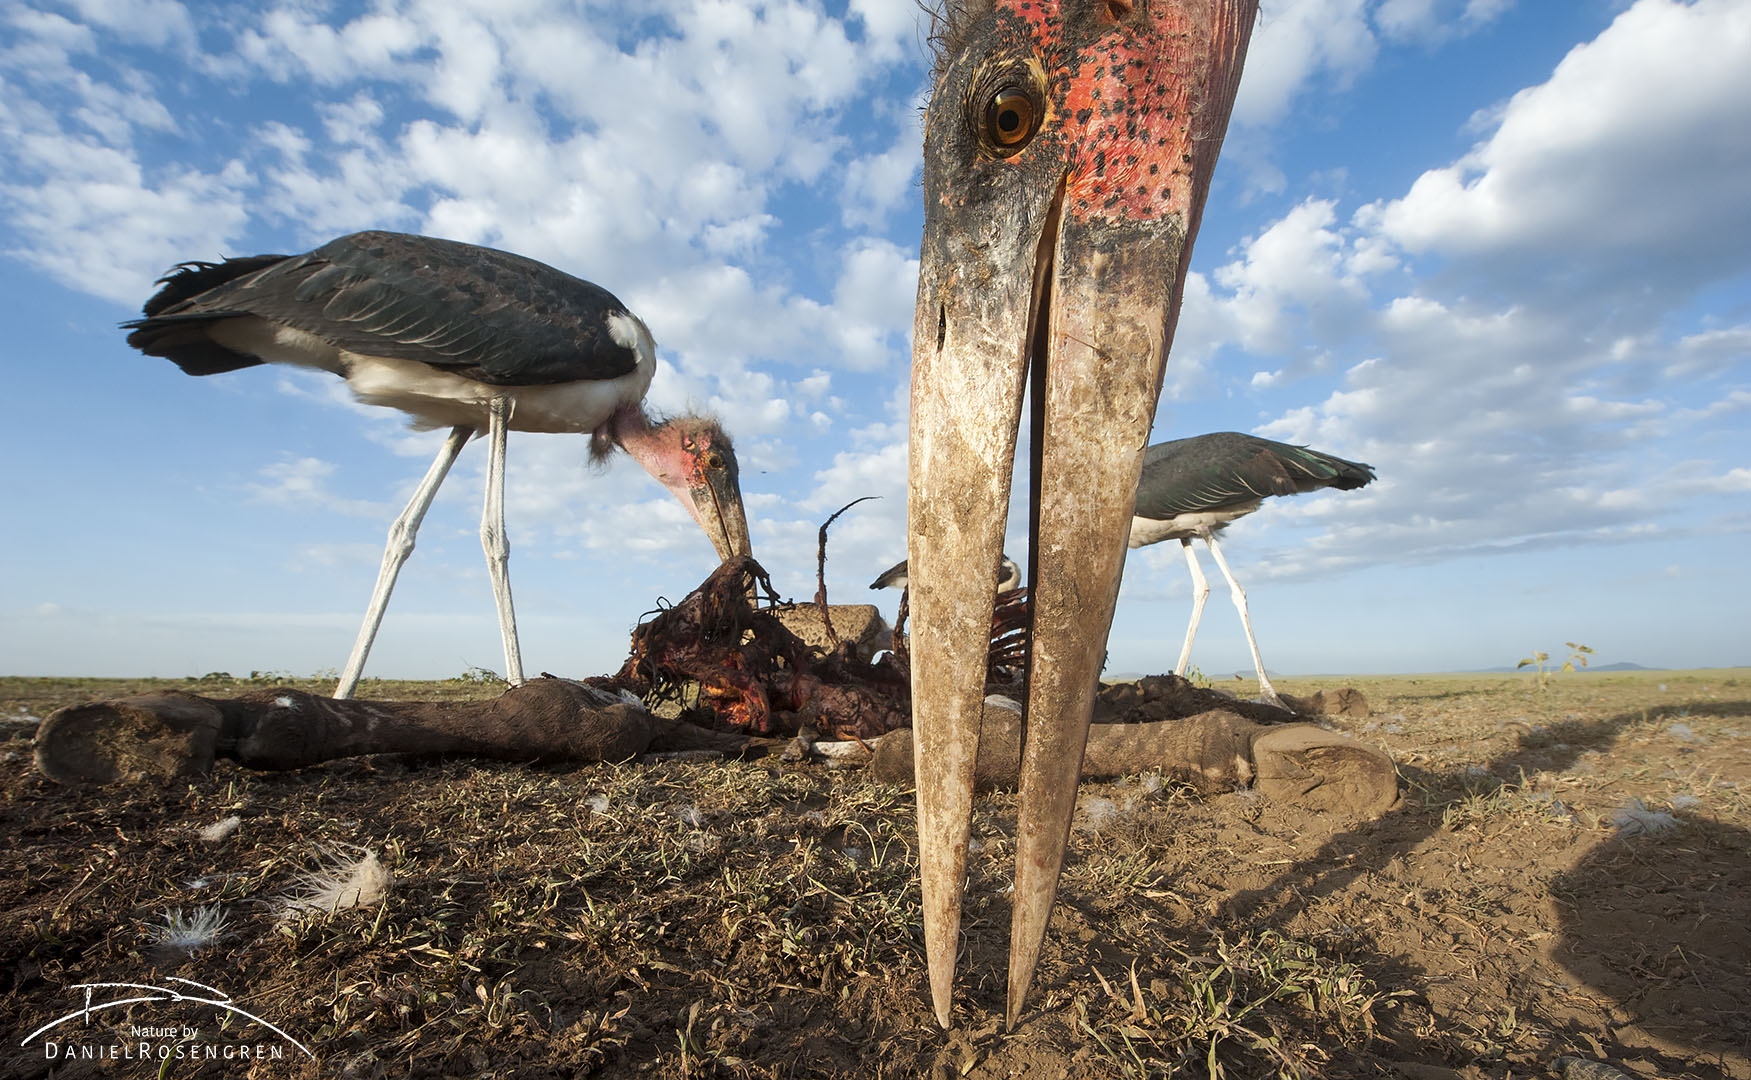 The daggar like beak of a Marabou stork. © Daniel Rosengren